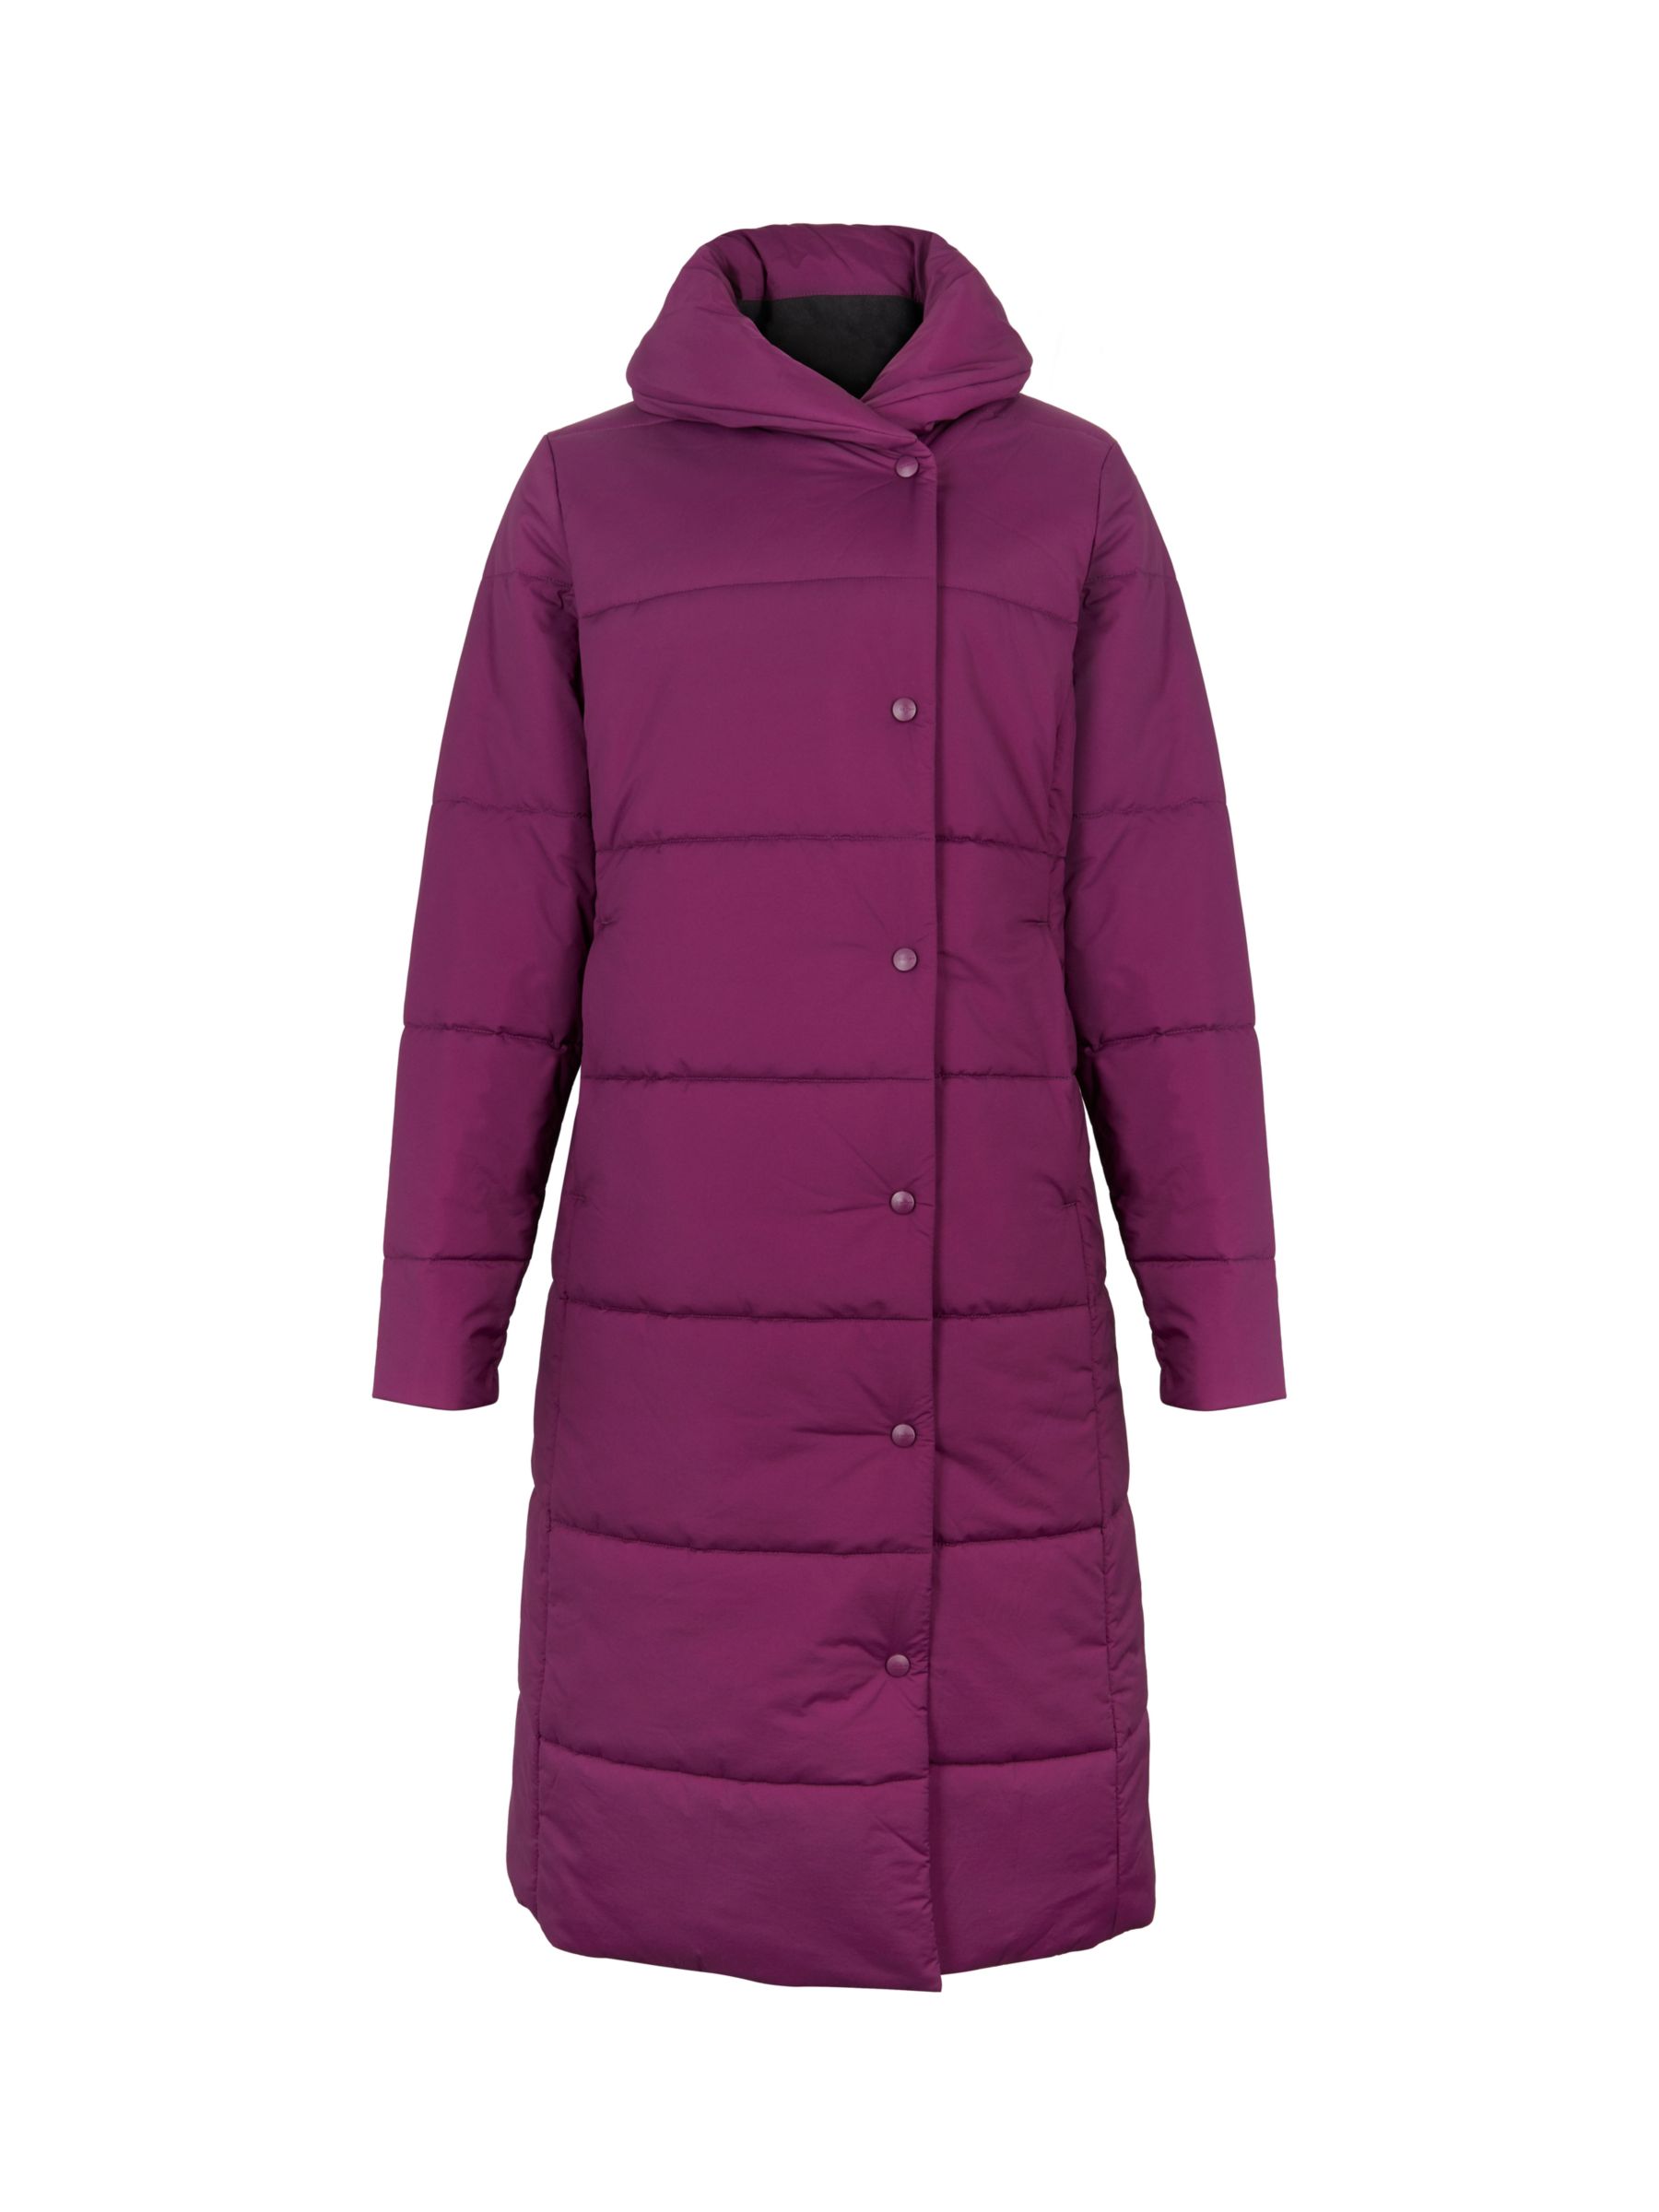 Lauren James Women's Water Resistant Hooded Lightweight Anorak Jacket  (Purple, L)